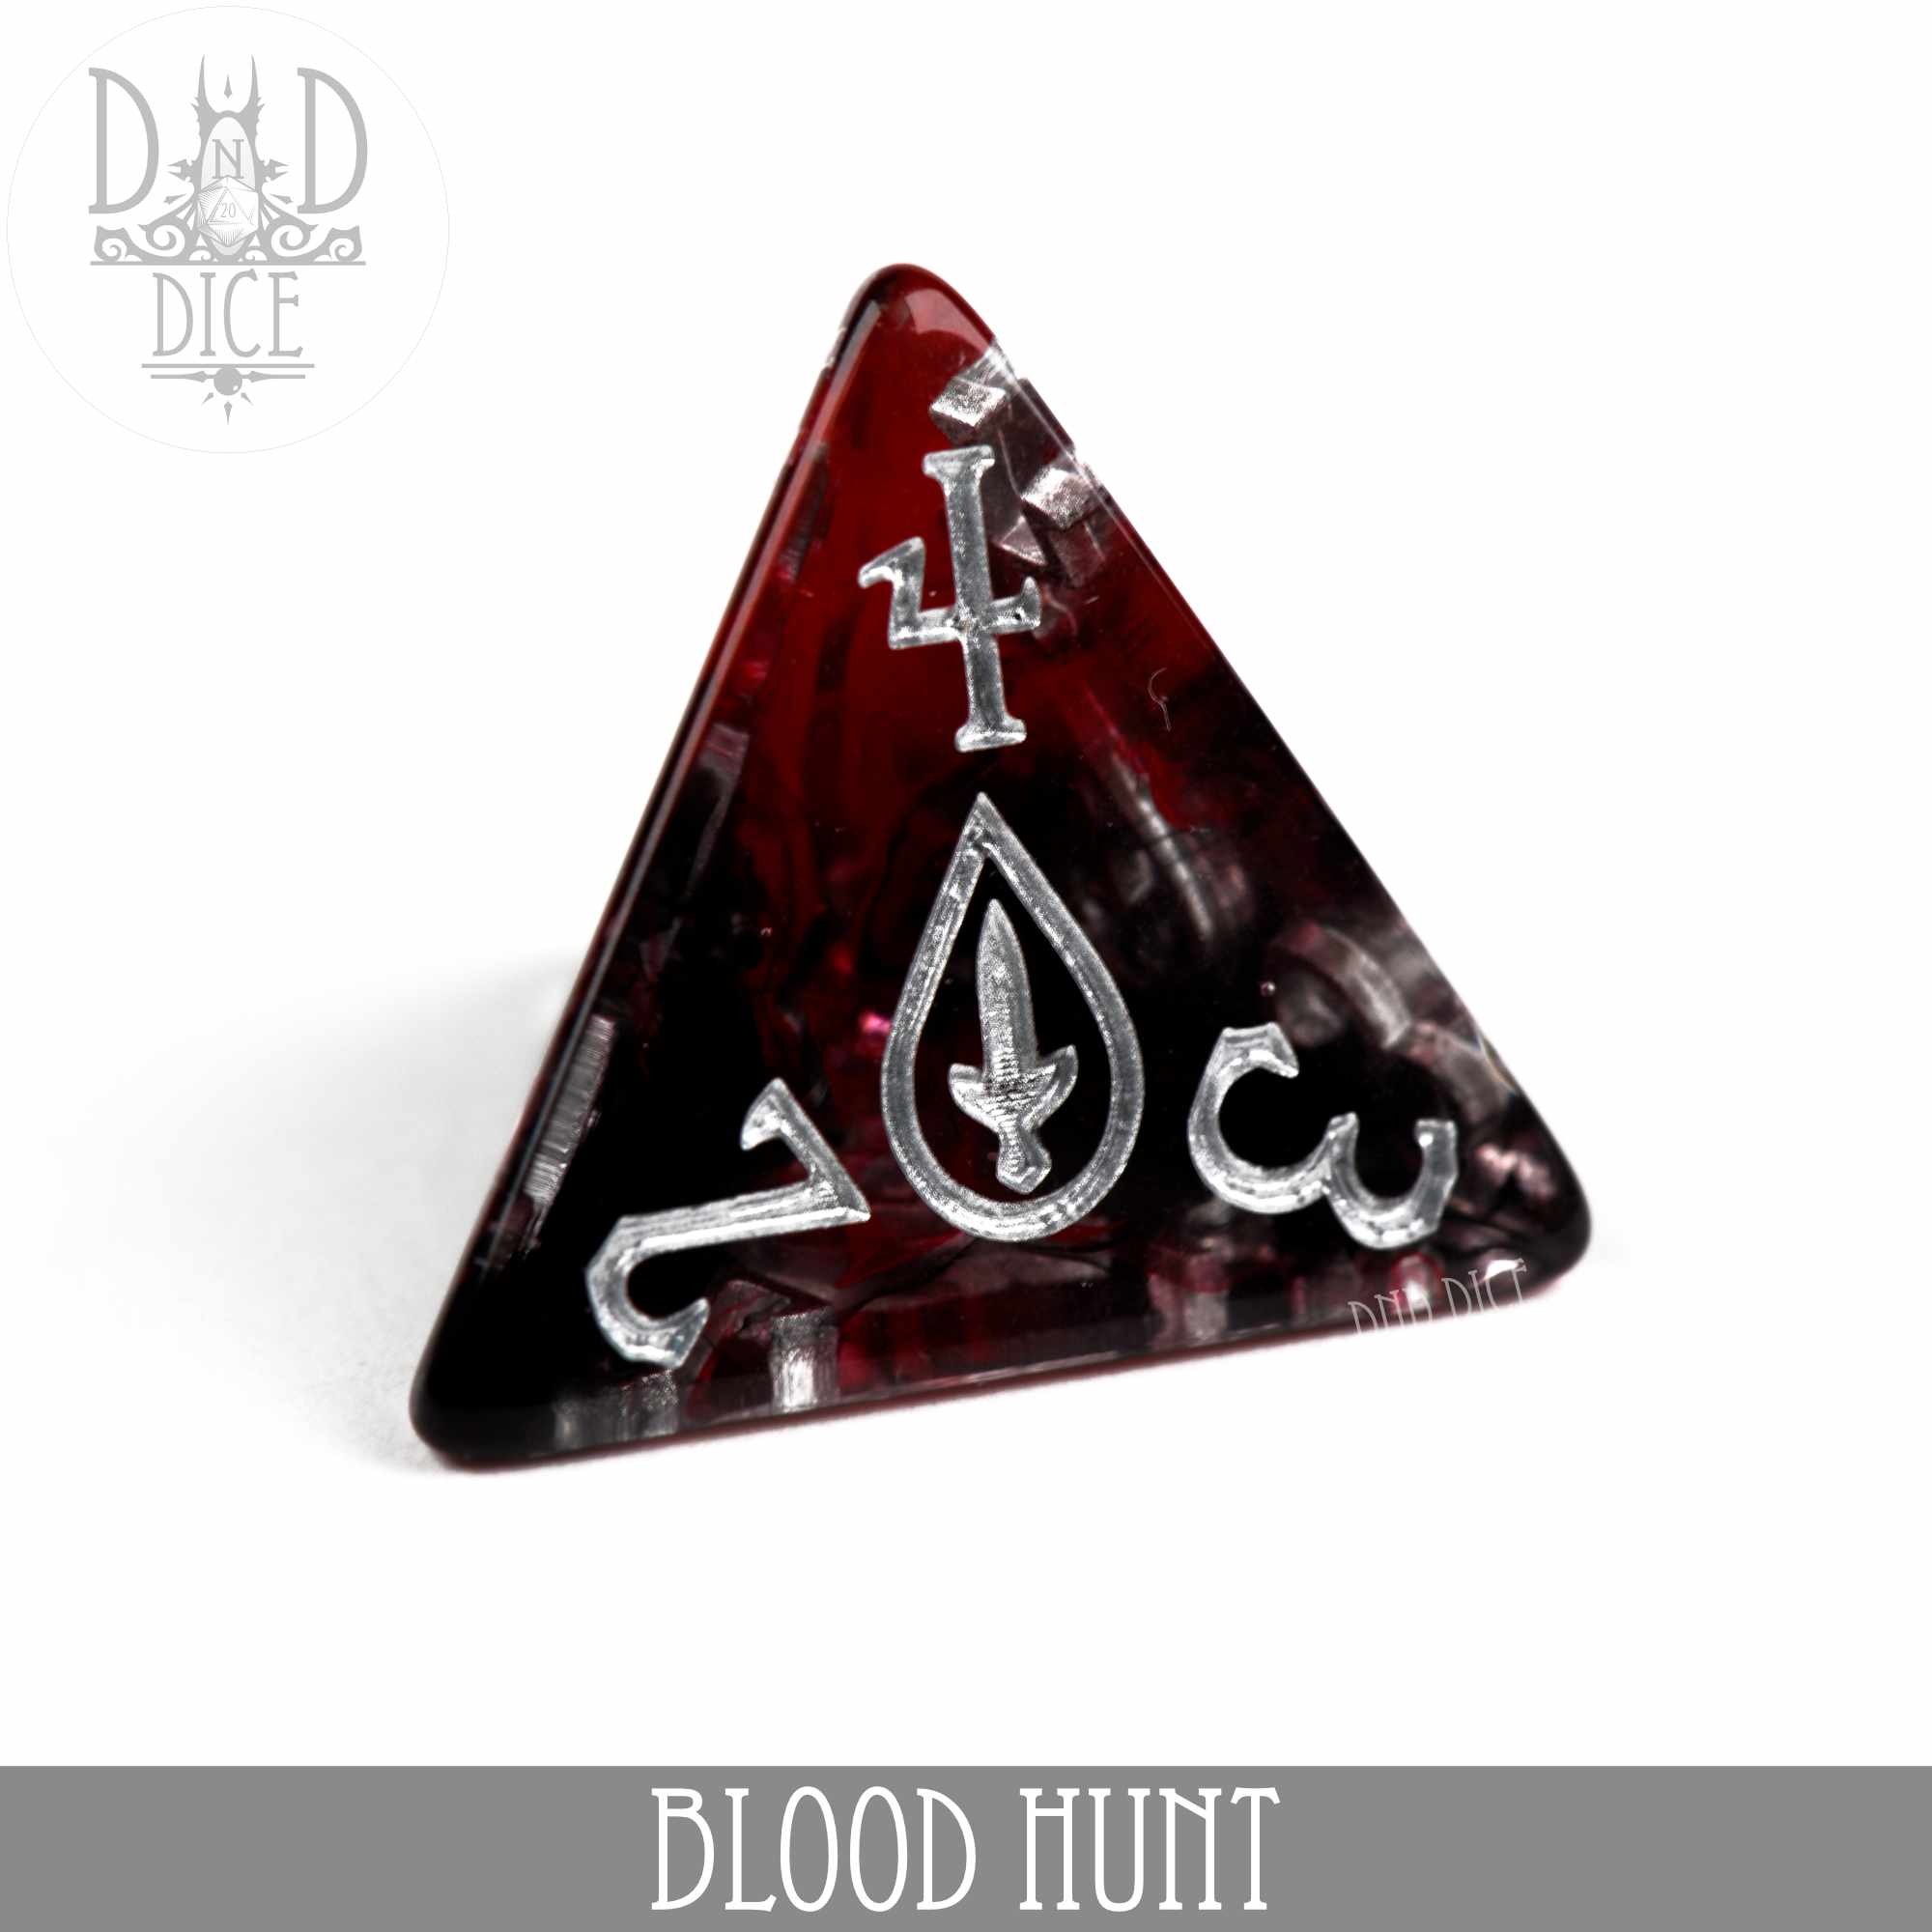 Blood Hunt 12 Dice Set